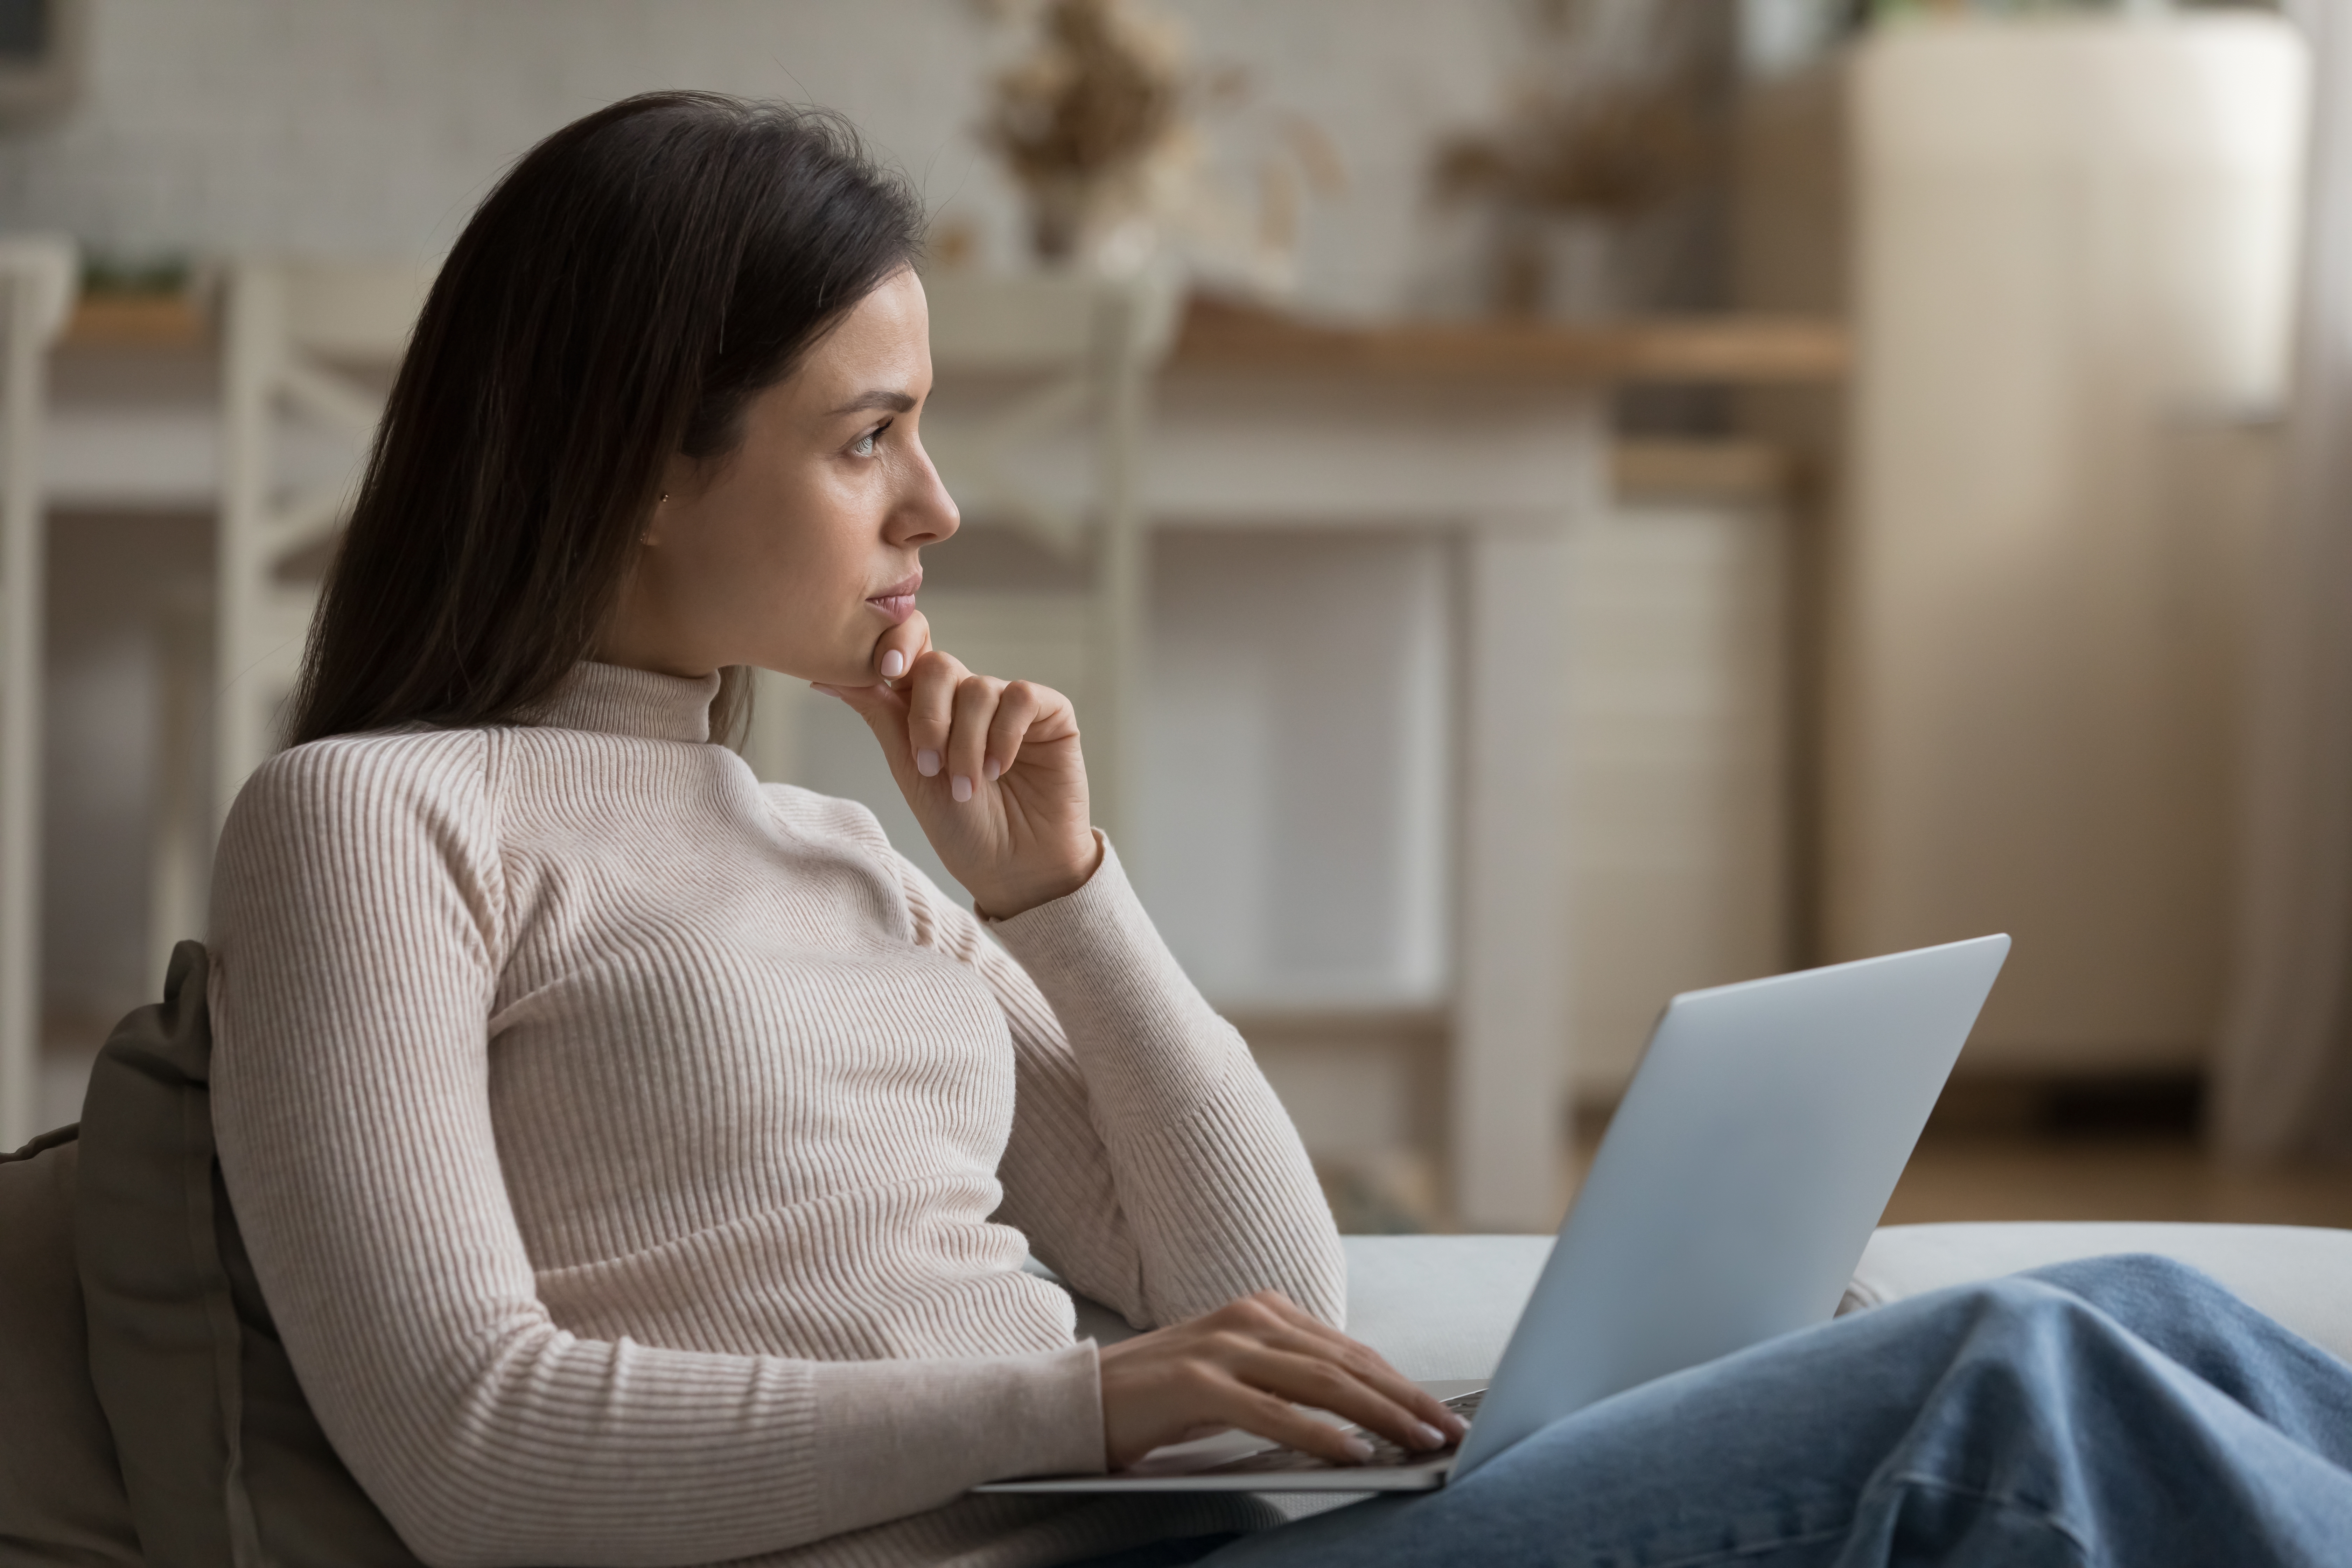 Une jeune femme pensive qui regarde au loin tout en utilisant son ordinateur portable | Source : Shutterstock